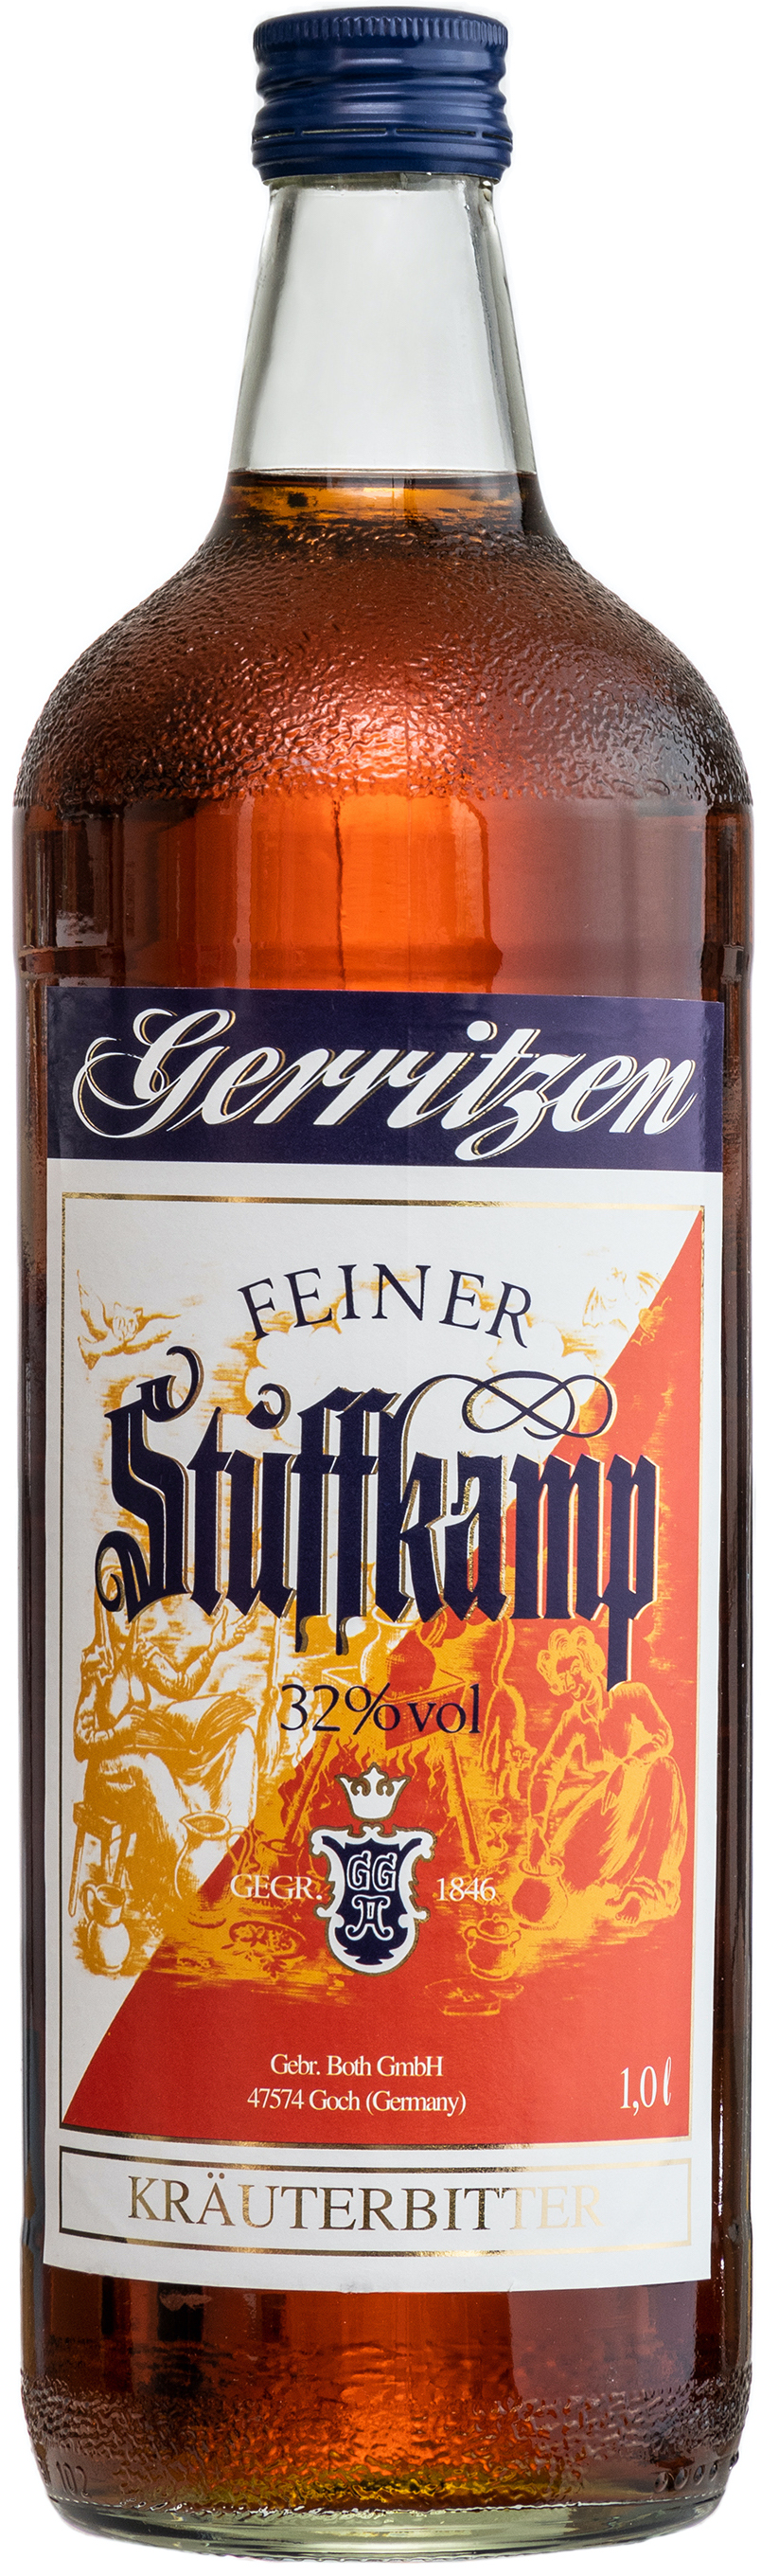 Gerritzen Stuffkamp 32% vol. 1,0L